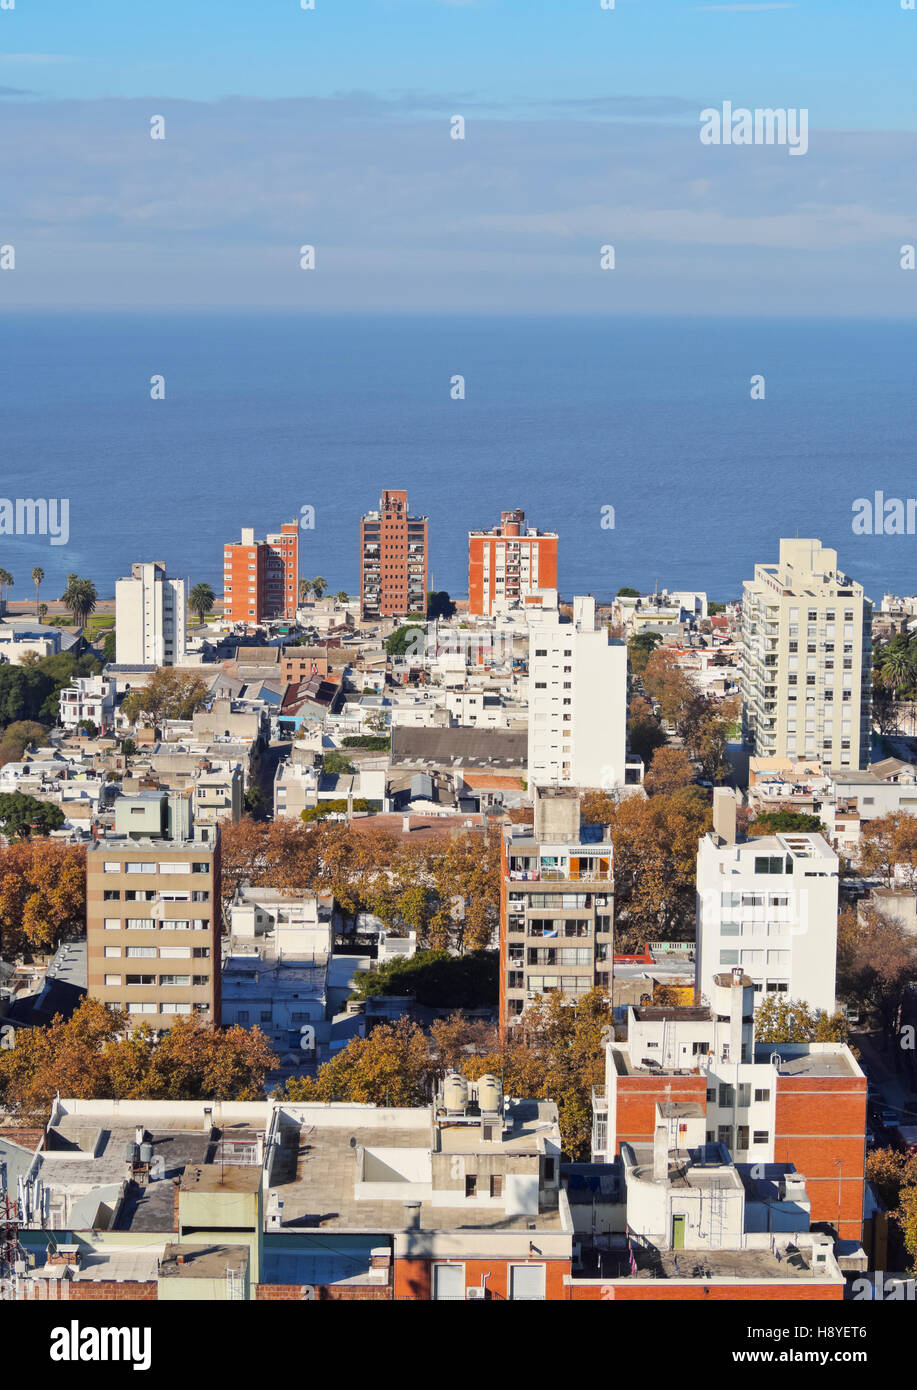 L'Uruguay, Montevideo, paysage urbain vue de l'Hôtel de Ville(Intendencia de Montevideo). Banque D'Images